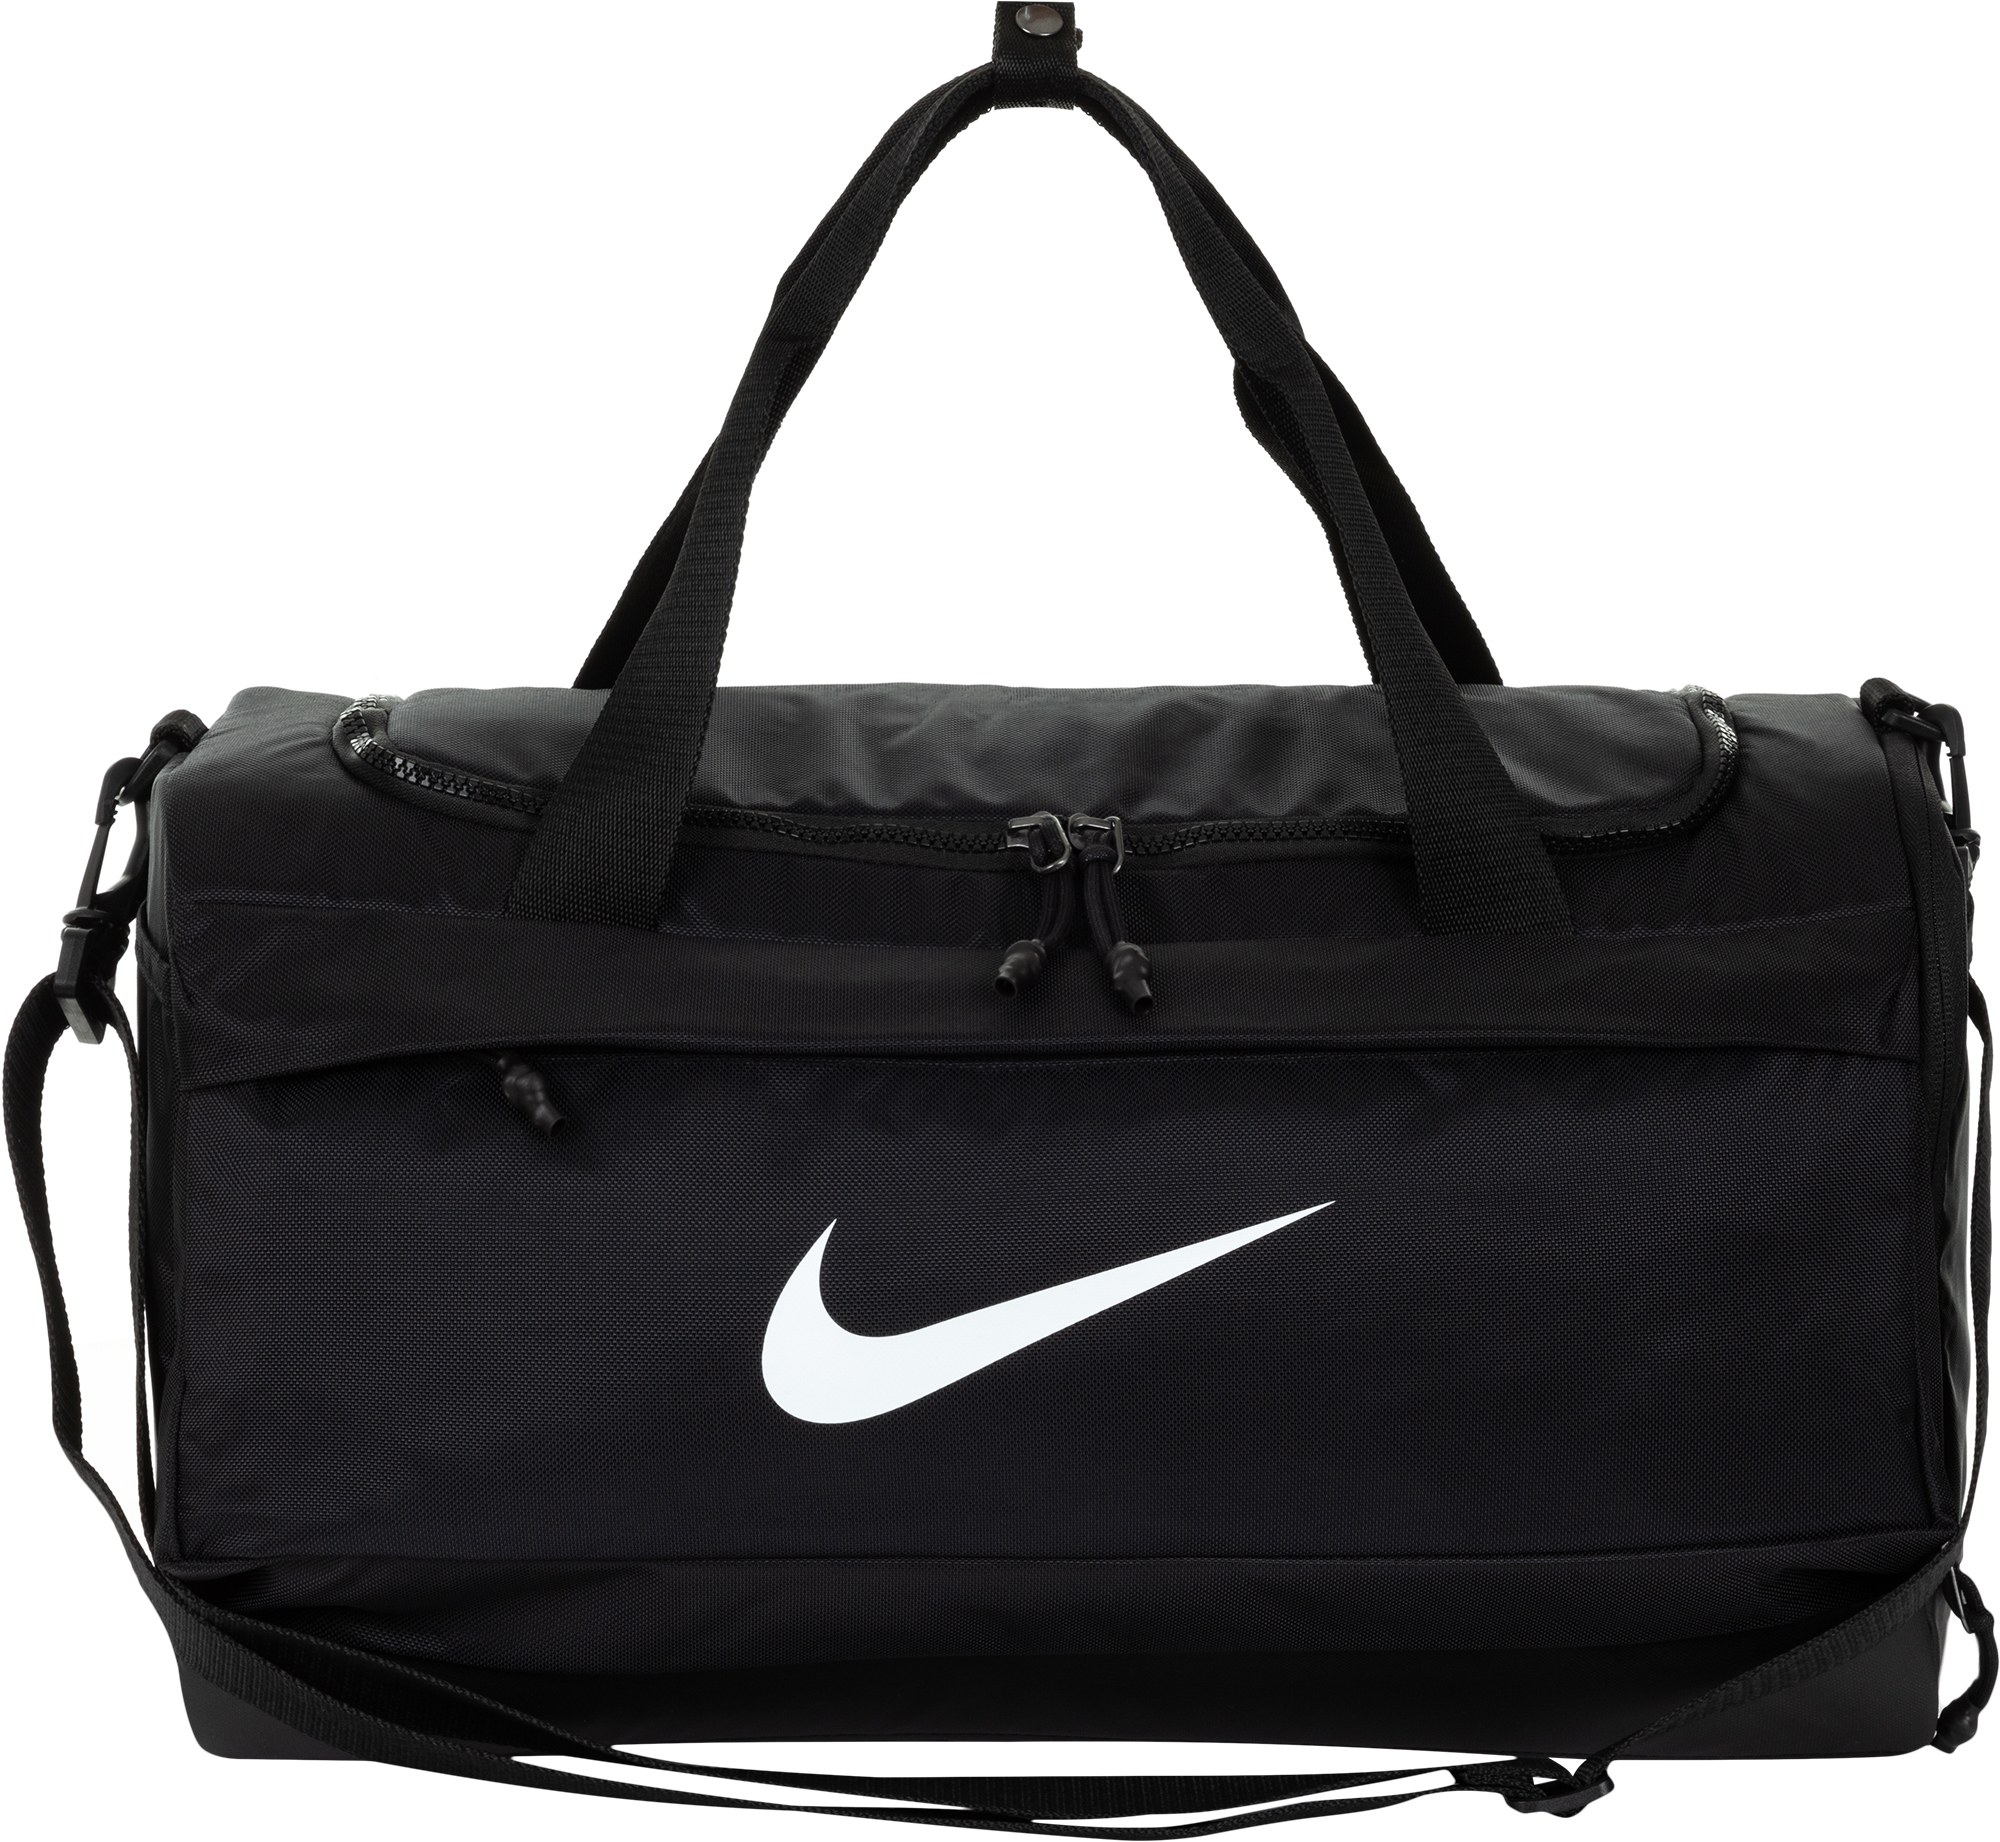 Черная спортивная сумка. Сумка Nike Brasilia 9.5 черная 95 л. Сумка спортивная найк мужская Спортмастер. Спортивная сумка Nike Спортмастер. Спортивная сумка найк черная Спортмастер.